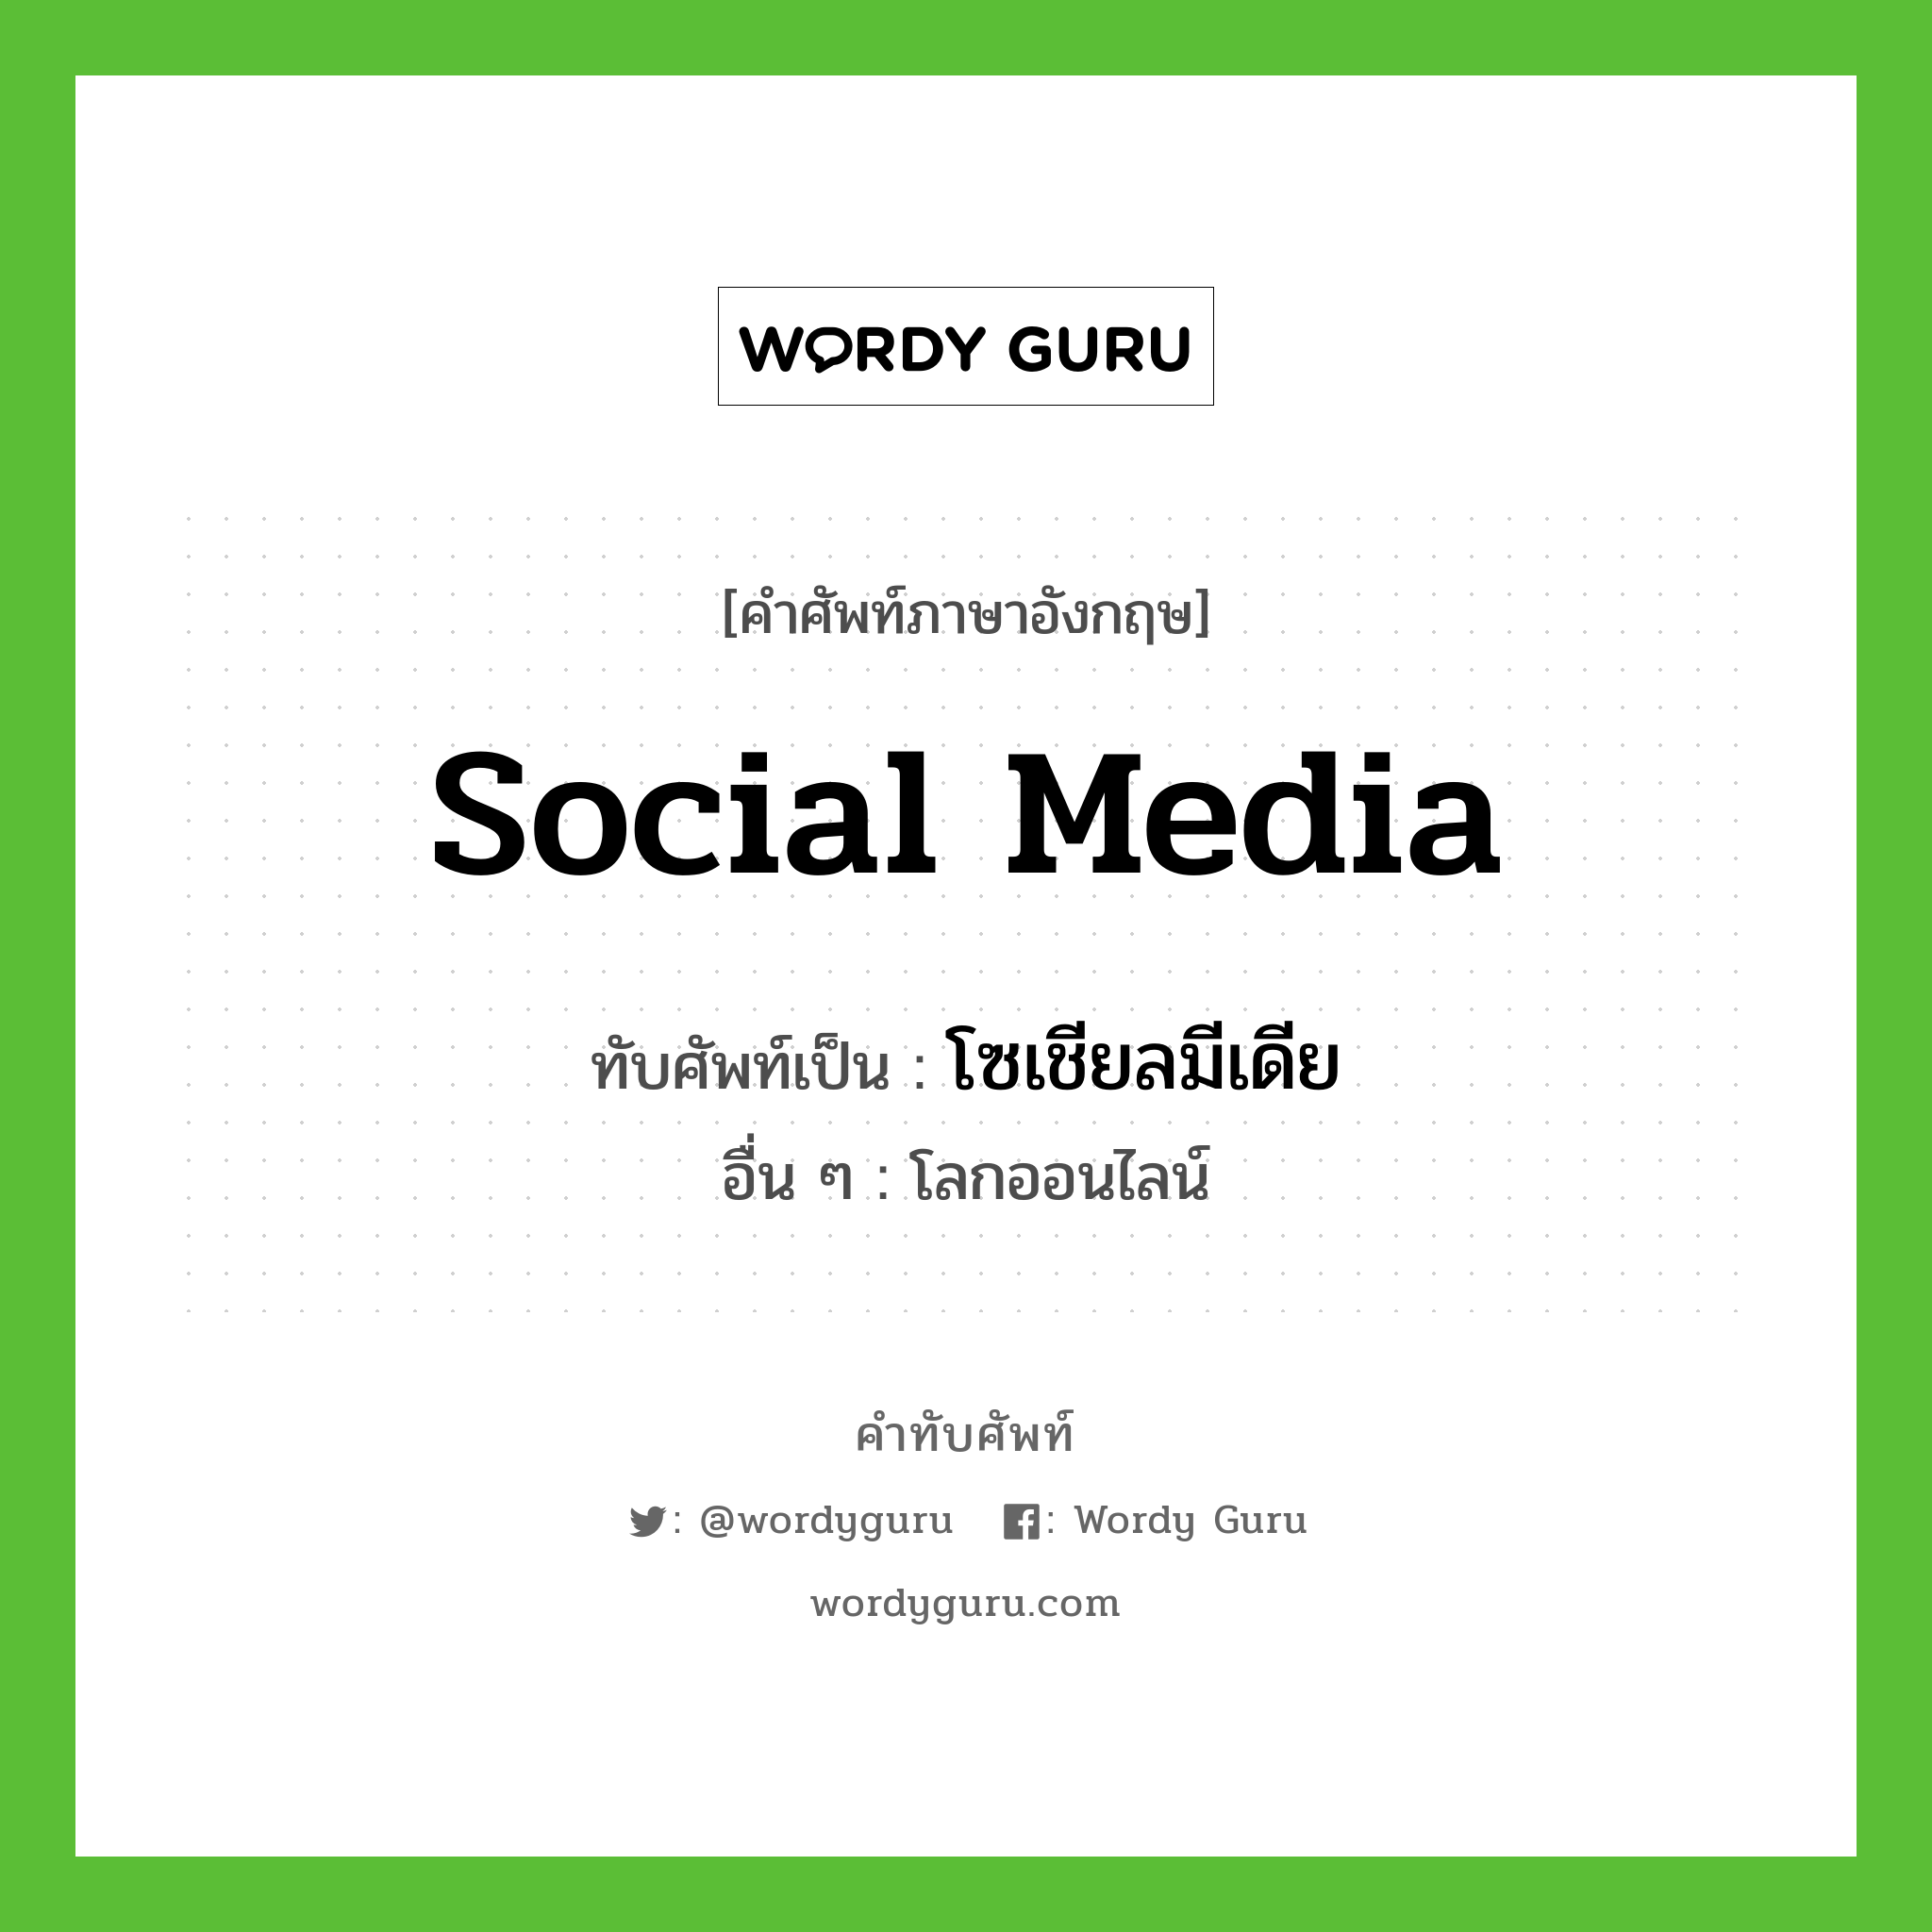 social media เขียนเป็นคำไทยว่าอะไร?, คำศัพท์ภาษาอังกฤษ social media ทับศัพท์เป็น โซเชียลมีเดีย อื่น ๆ โลกออนไลน์